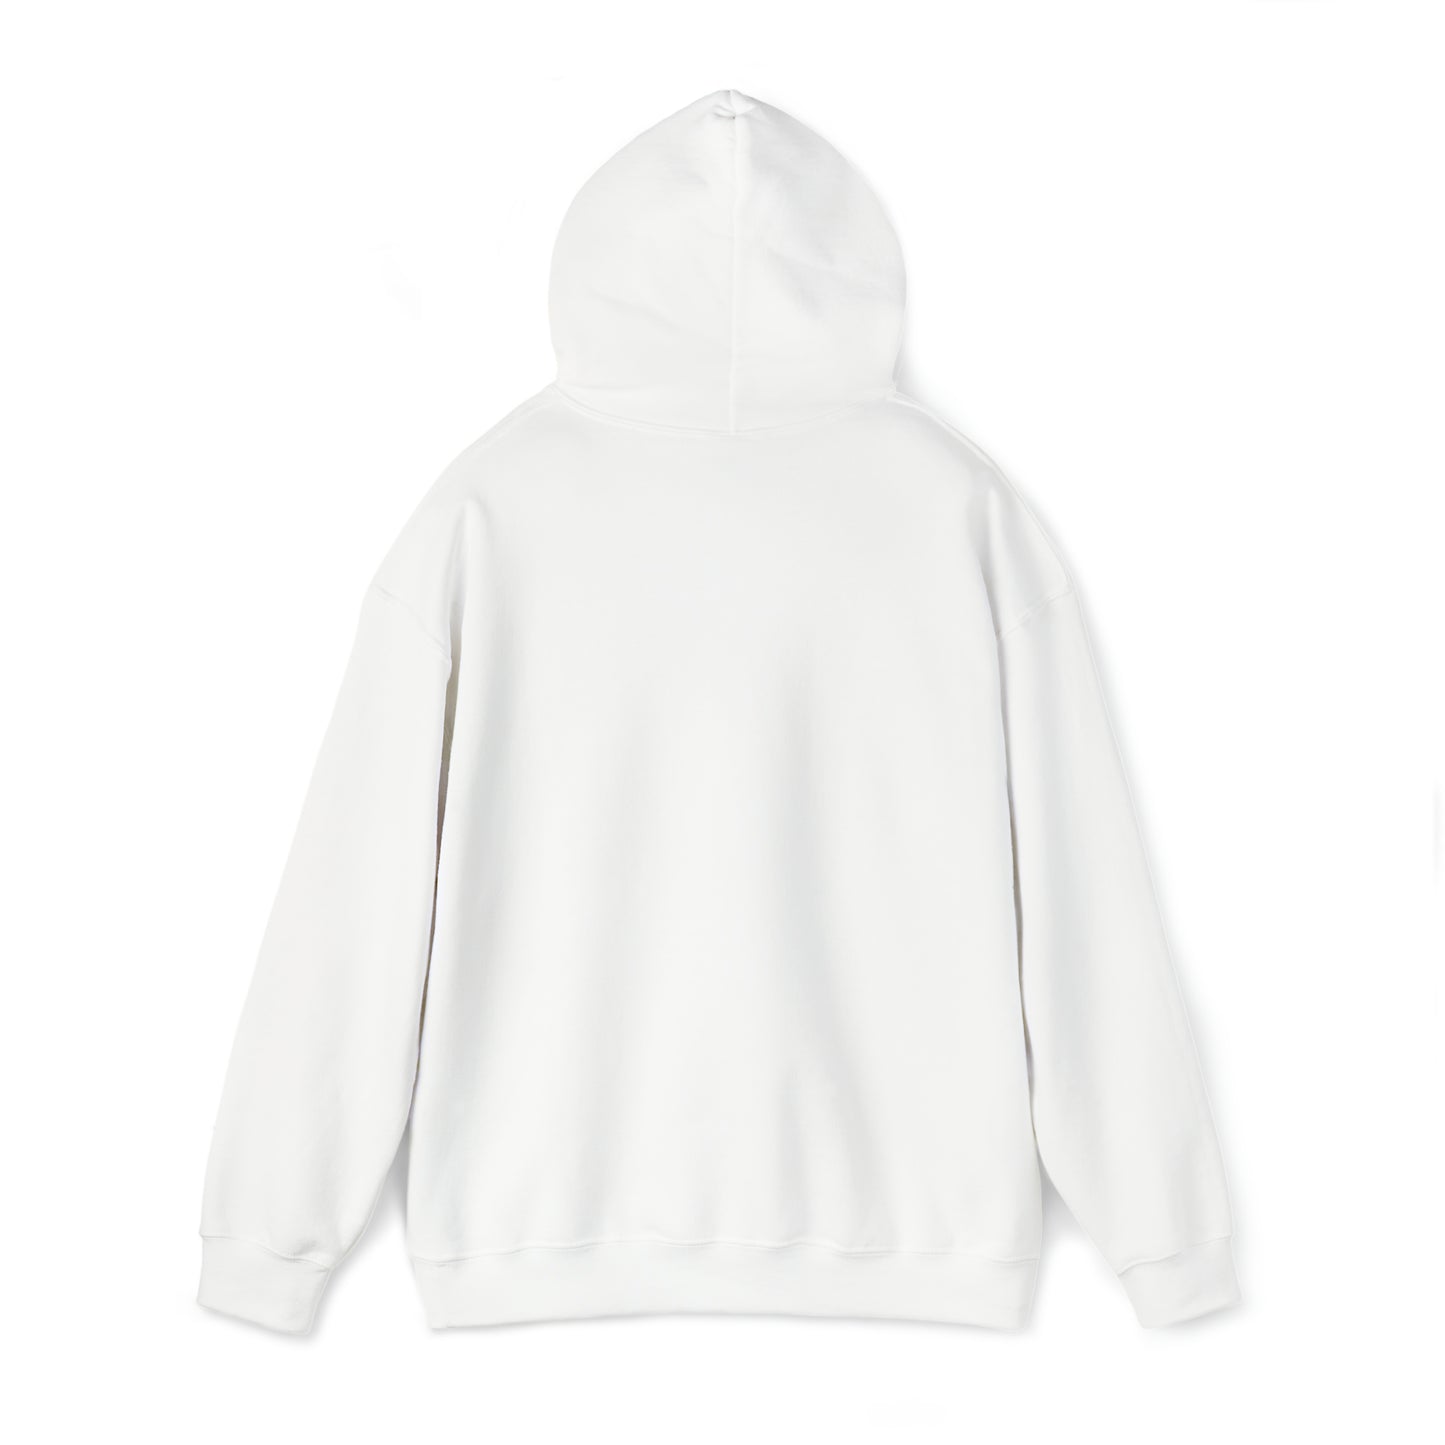 Deer/Tree silhouette - Unisex Heavy Blend™ Hooded Sweatshirt